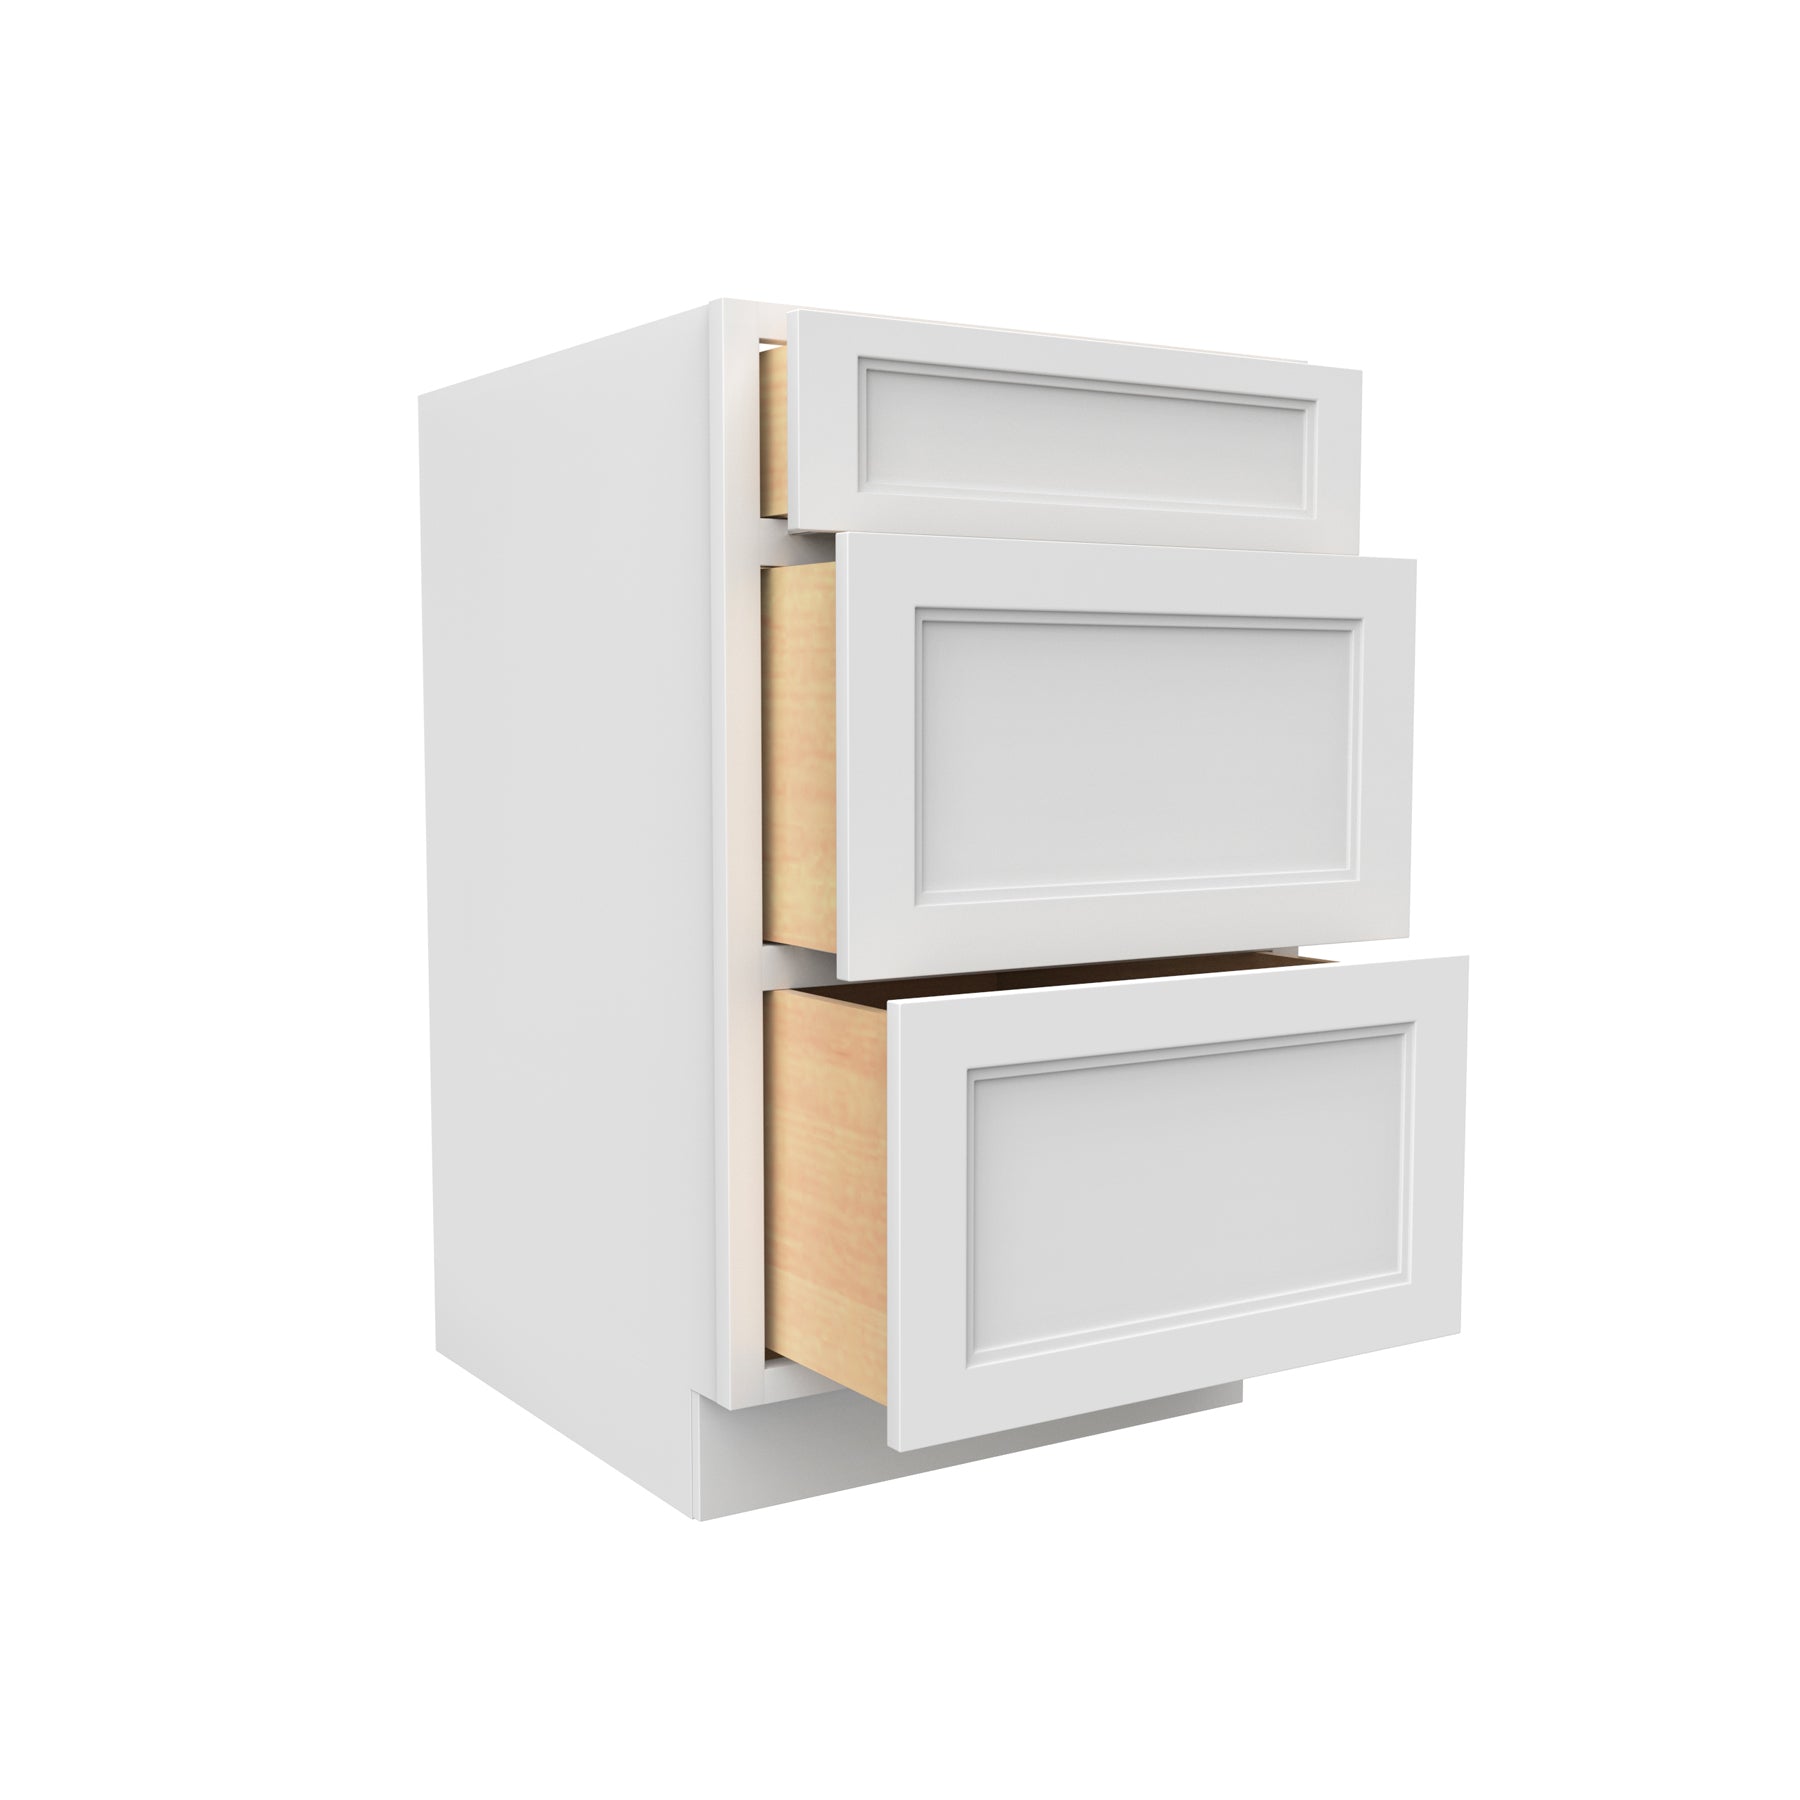 Fashion White - 3 Drawer Base Cabinet | 21"W x 34.5"H x 24"D